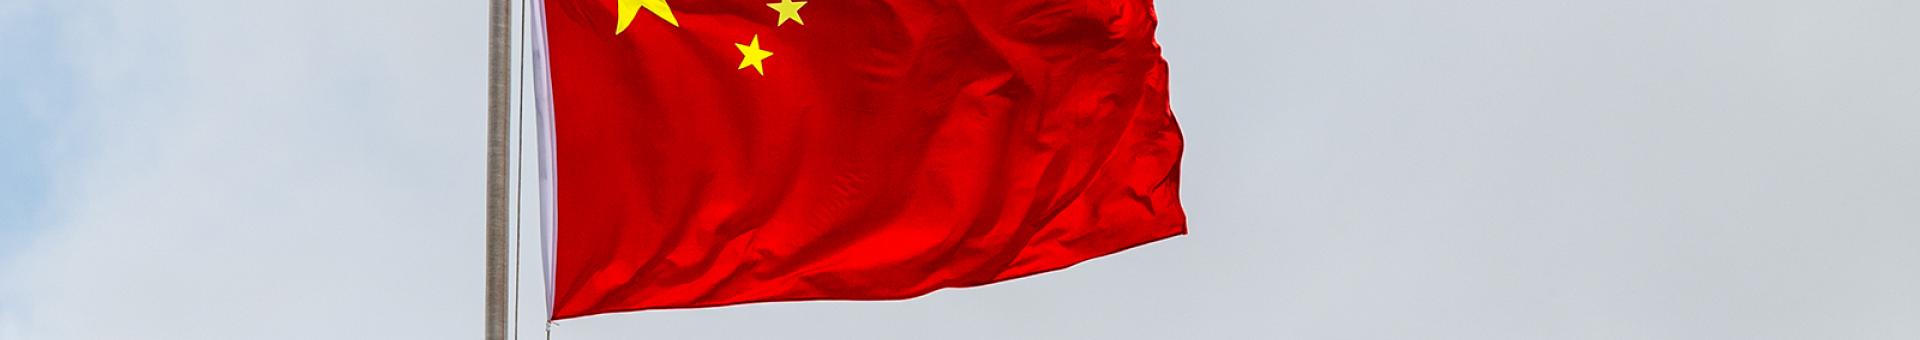 Chine : La Belt and Road Initiative est-elle menacée ?